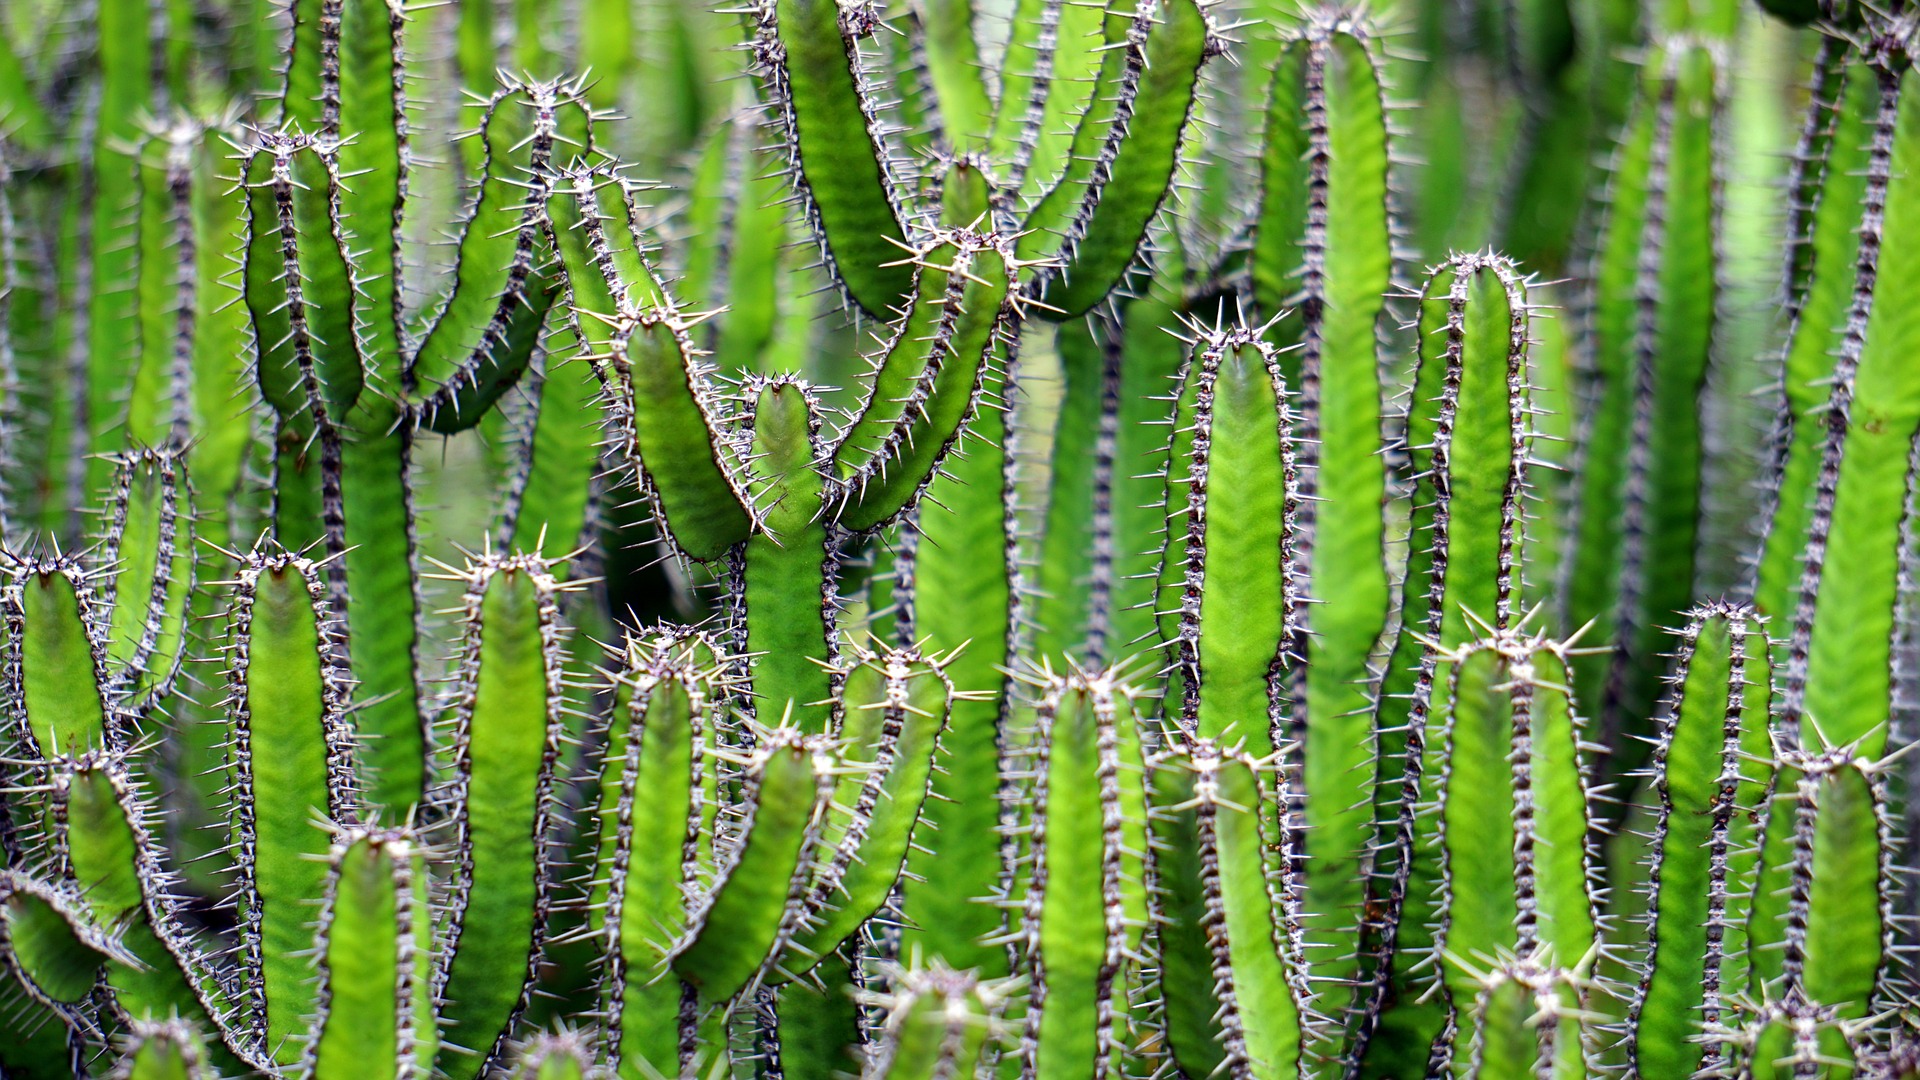 Una de las características de las plantas es su presencia en múltiples ambientes y ecosistemas radicalmente opuestos. Los cáctus son un ejemplo de los mecanismos de adaptación de algunos seres vivos que han sido elegidos a lo largo de la evolución.